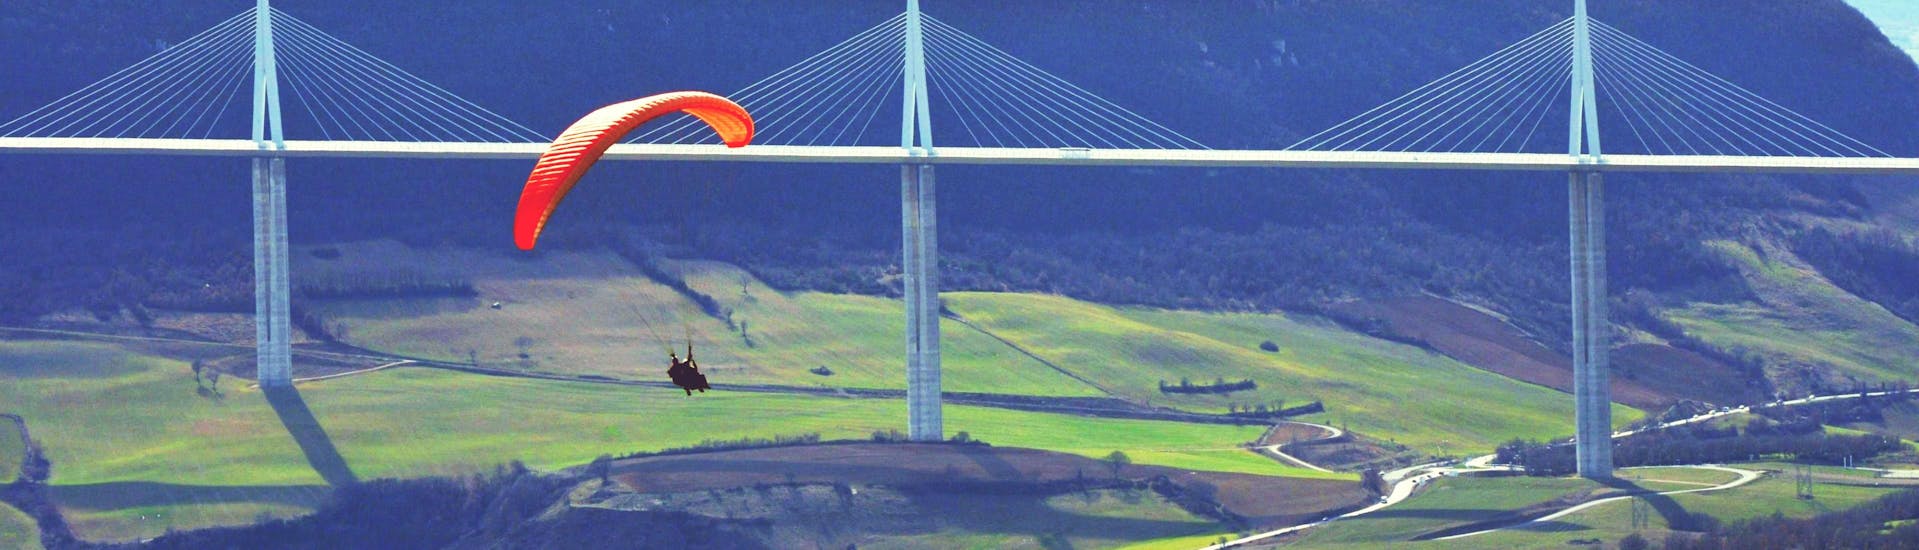 Un pilote de parapente d'Air Magic Parapente effectue un vol en tandem en parapente "Ascendance" devant le viaduc de Millau.